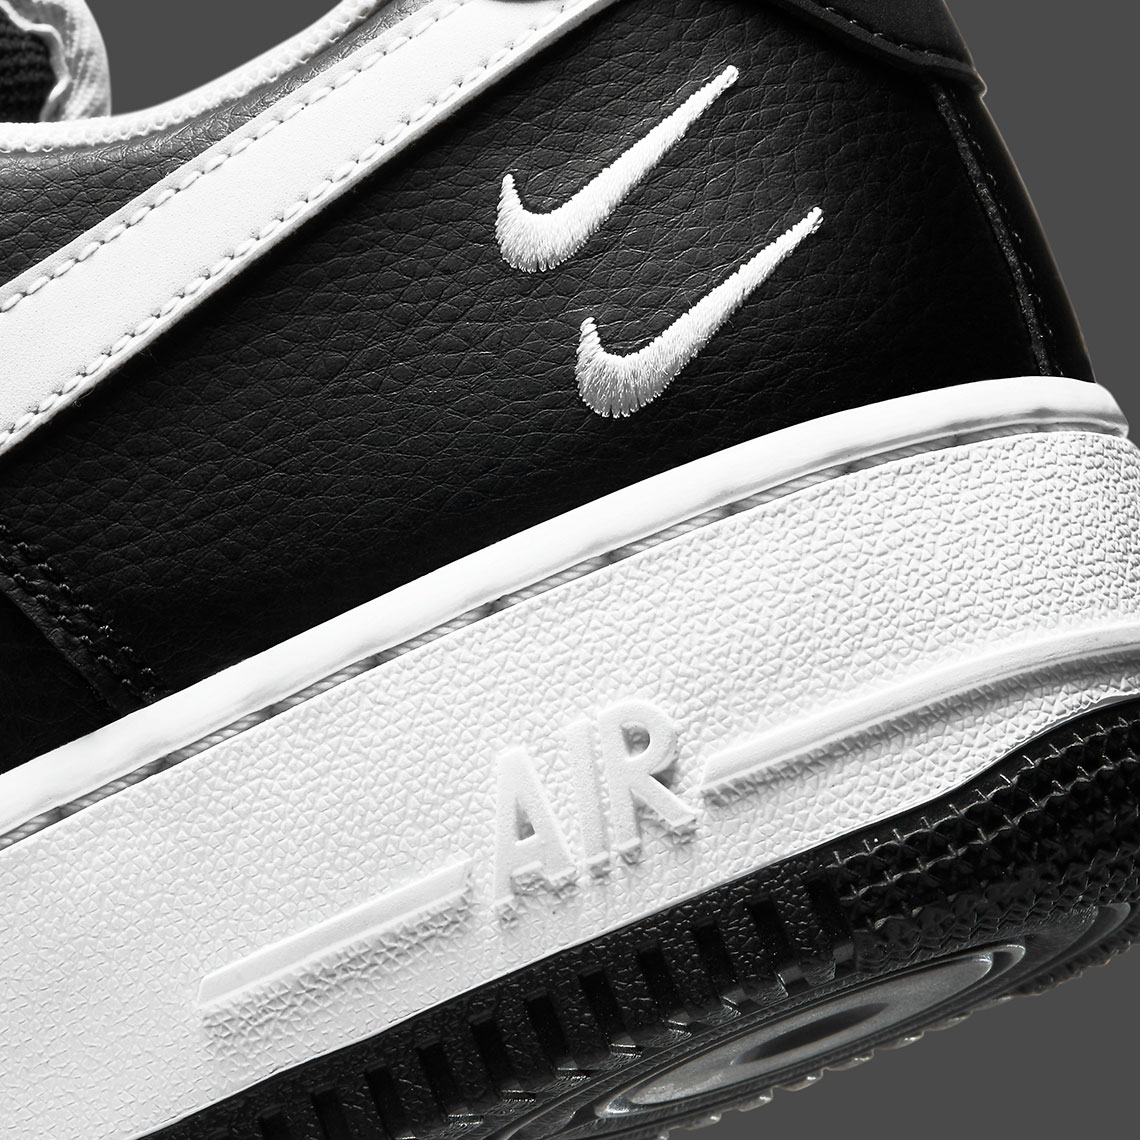 Nike nike huarache khaki for sale black shoes free Black White Ct2300 001 1